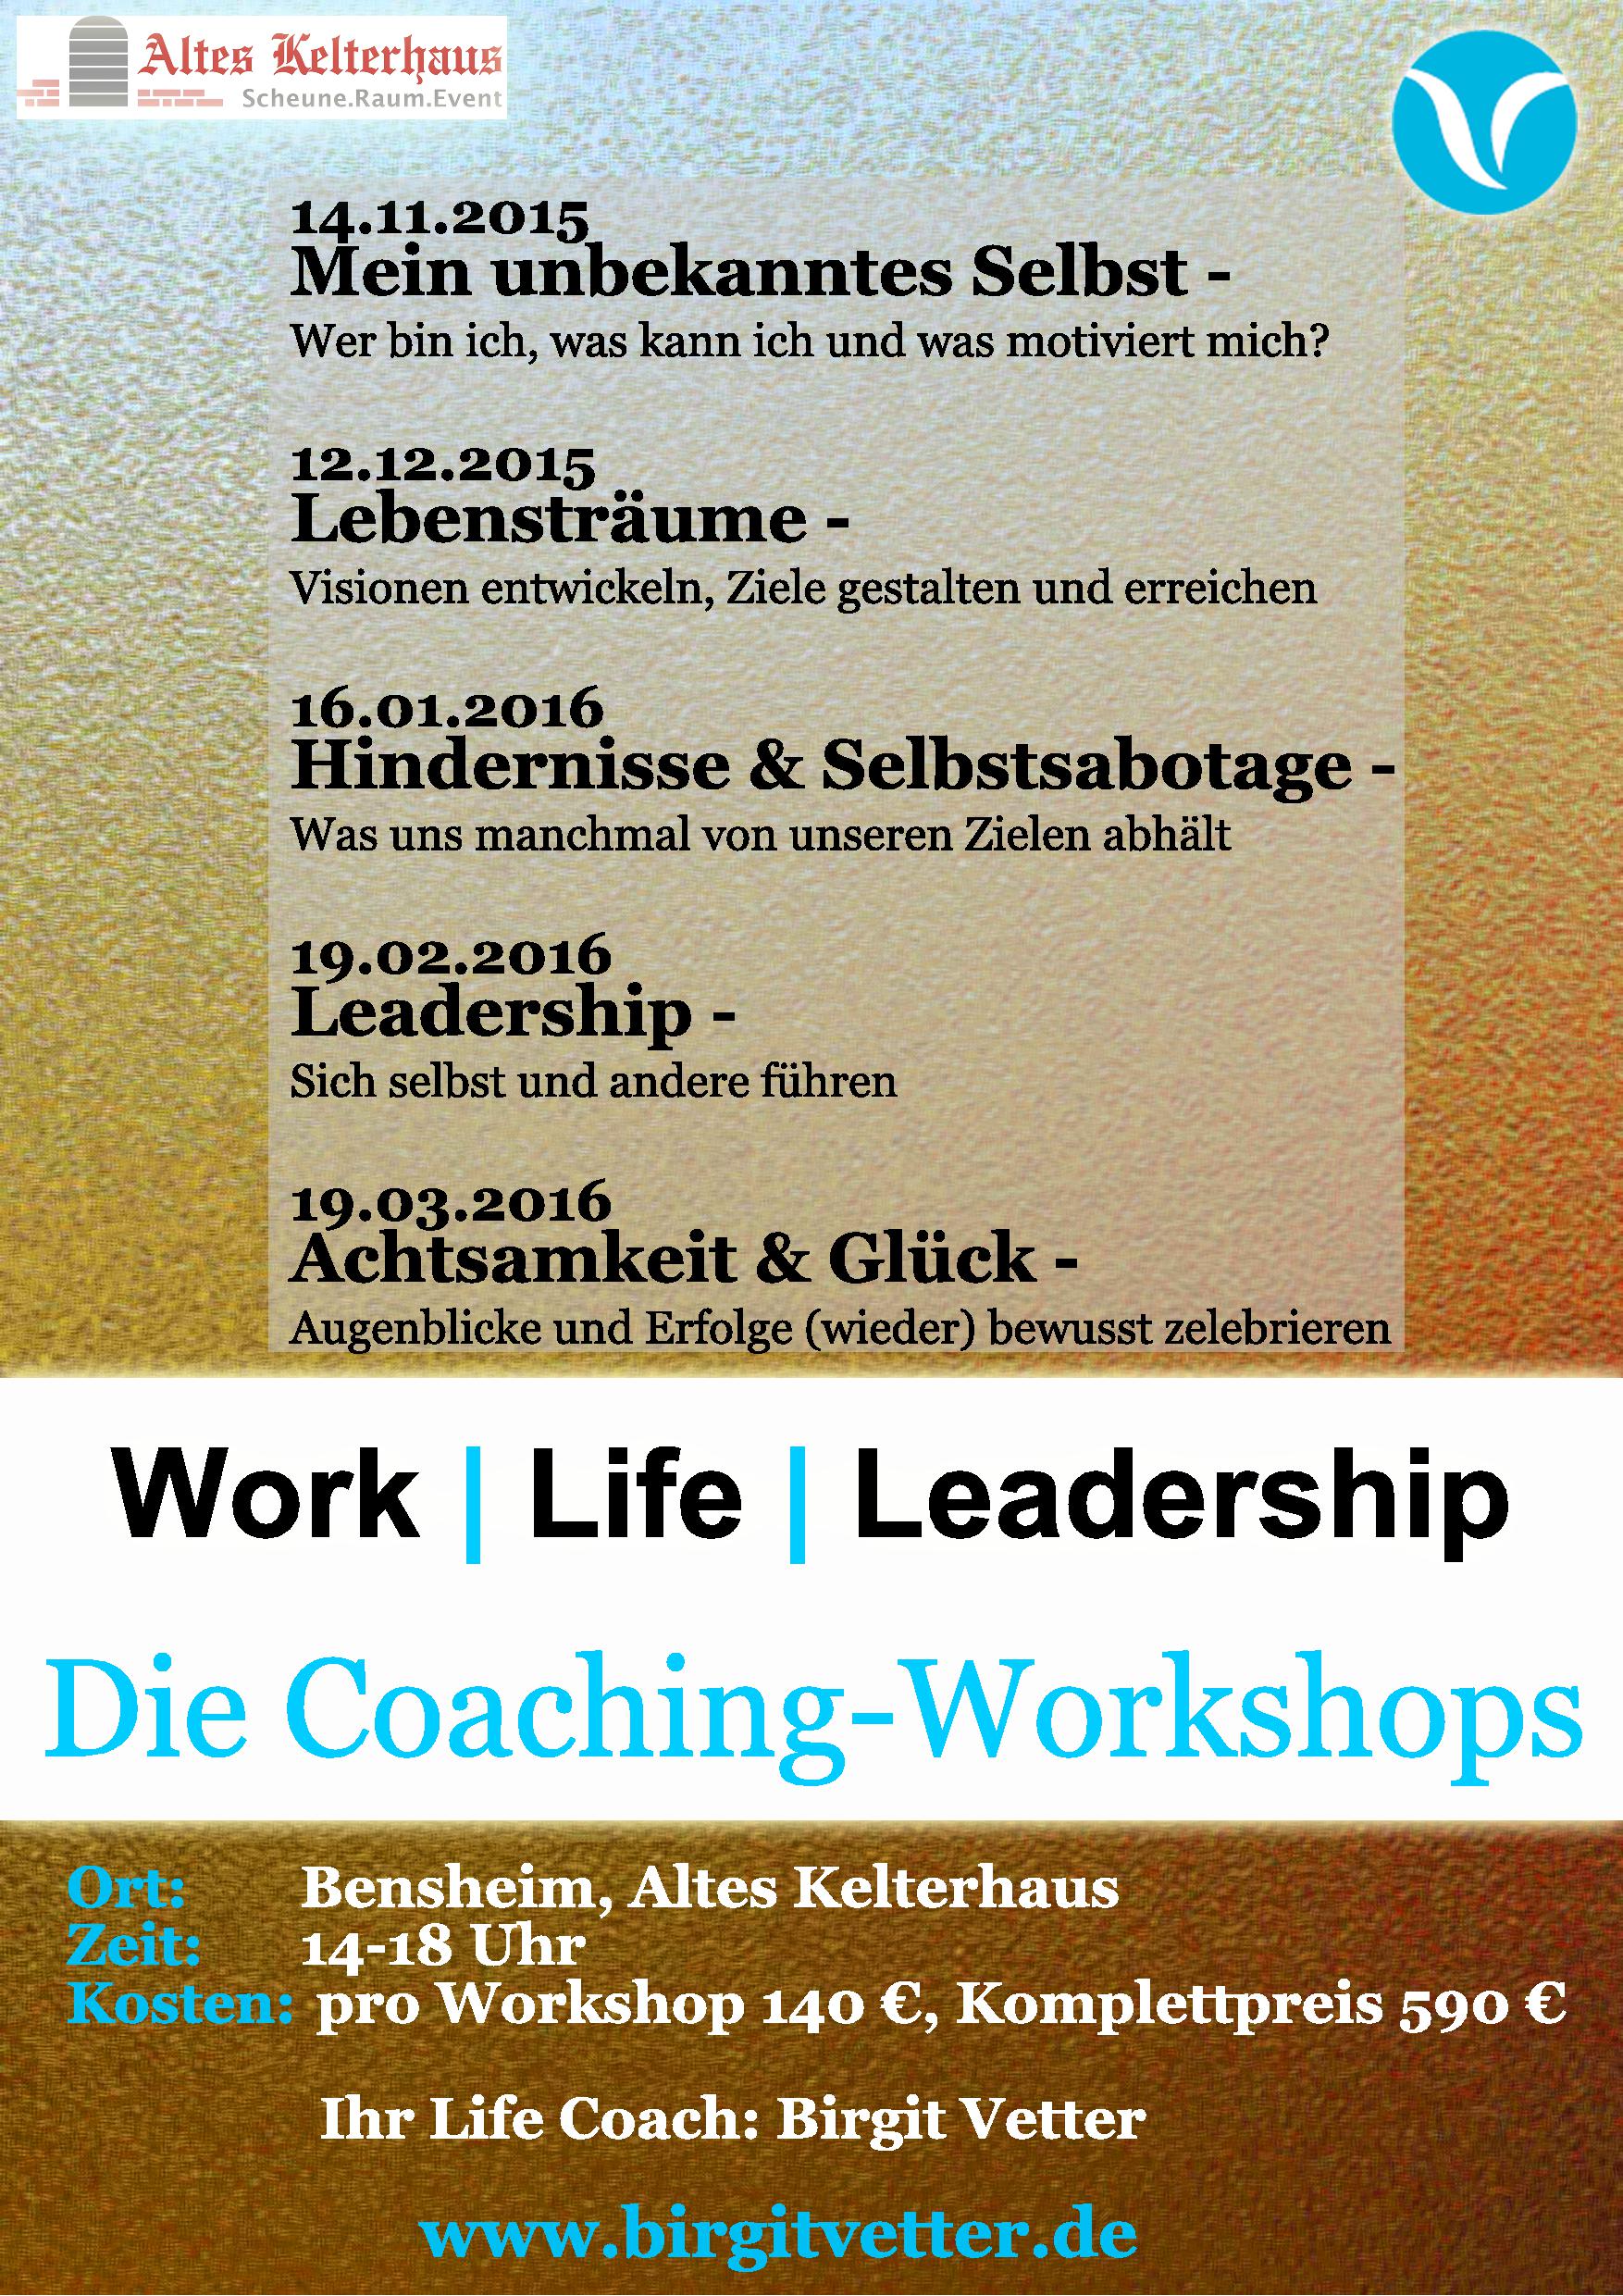 Work | Life | Leadership Workshop